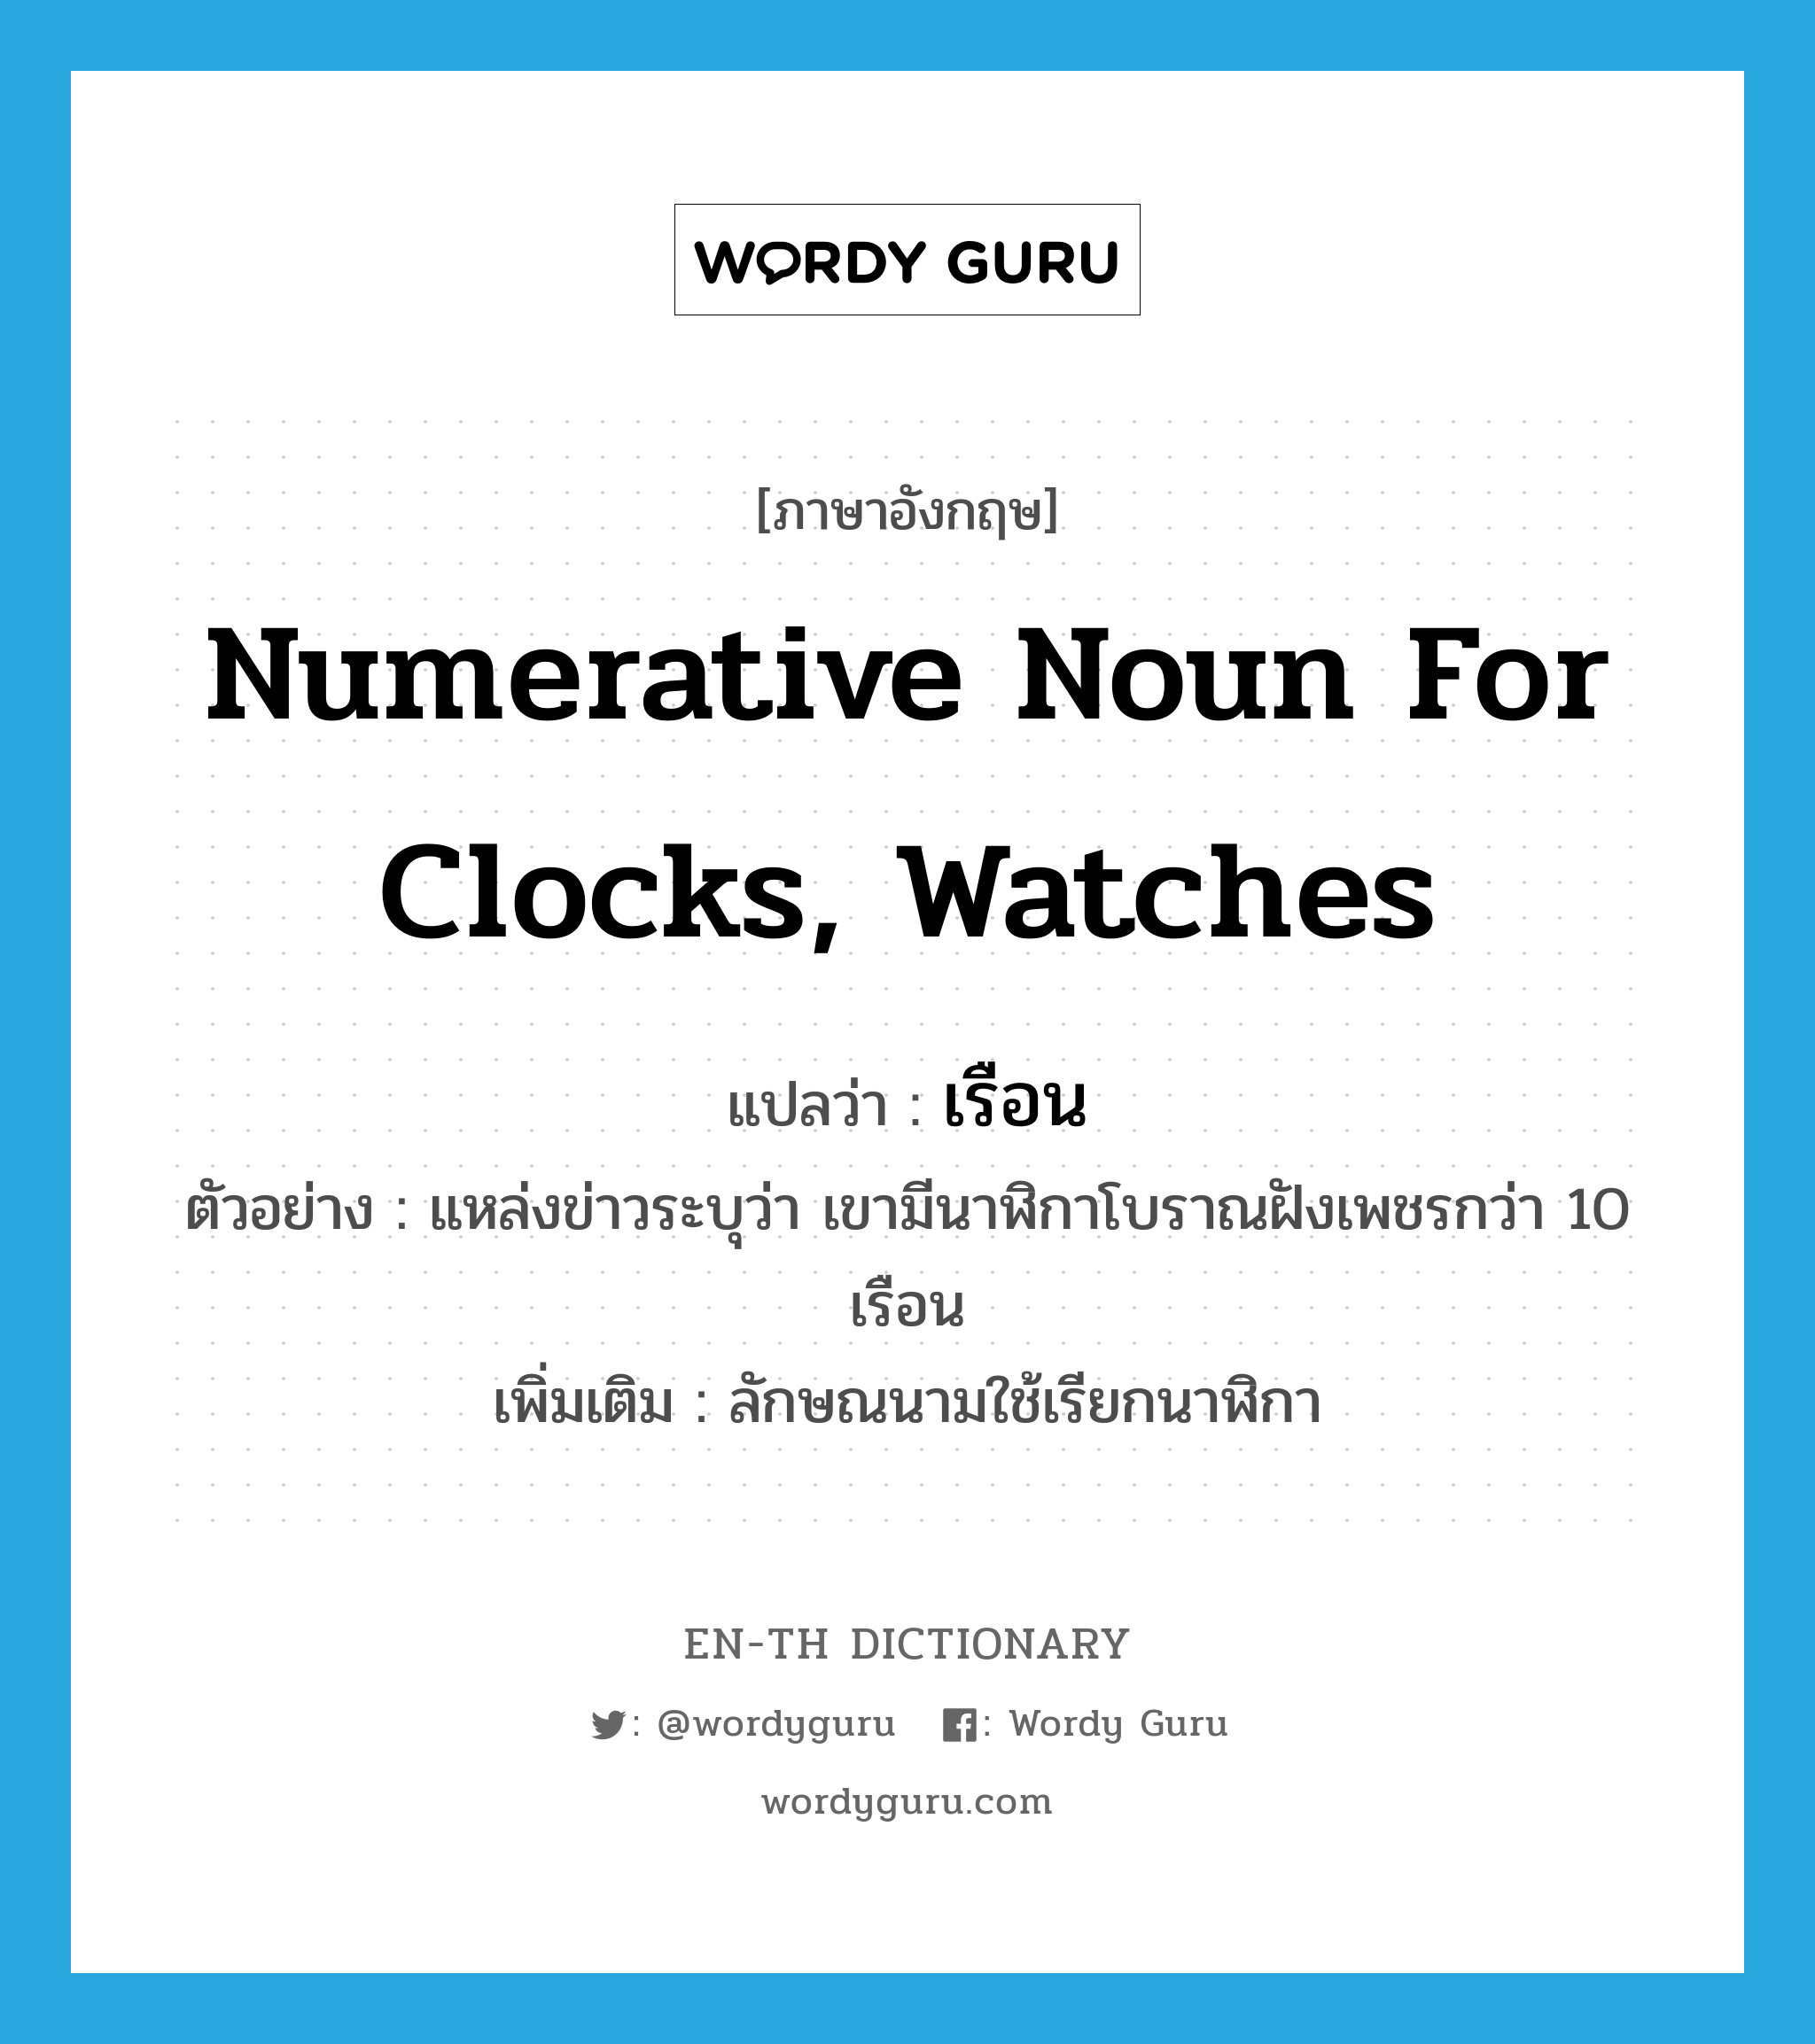 เรือน ภาษาอังกฤษ?, คำศัพท์ภาษาอังกฤษ เรือน แปลว่า numerative noun for clocks, watches ประเภท CLAS ตัวอย่าง แหล่งข่าวระบุว่า เขามีนาฬิกาโบราณฝังเพชรกว่า 10 เรือน เพิ่มเติม ลักษณนามใช้เรียกนาฬิกา หมวด CLAS